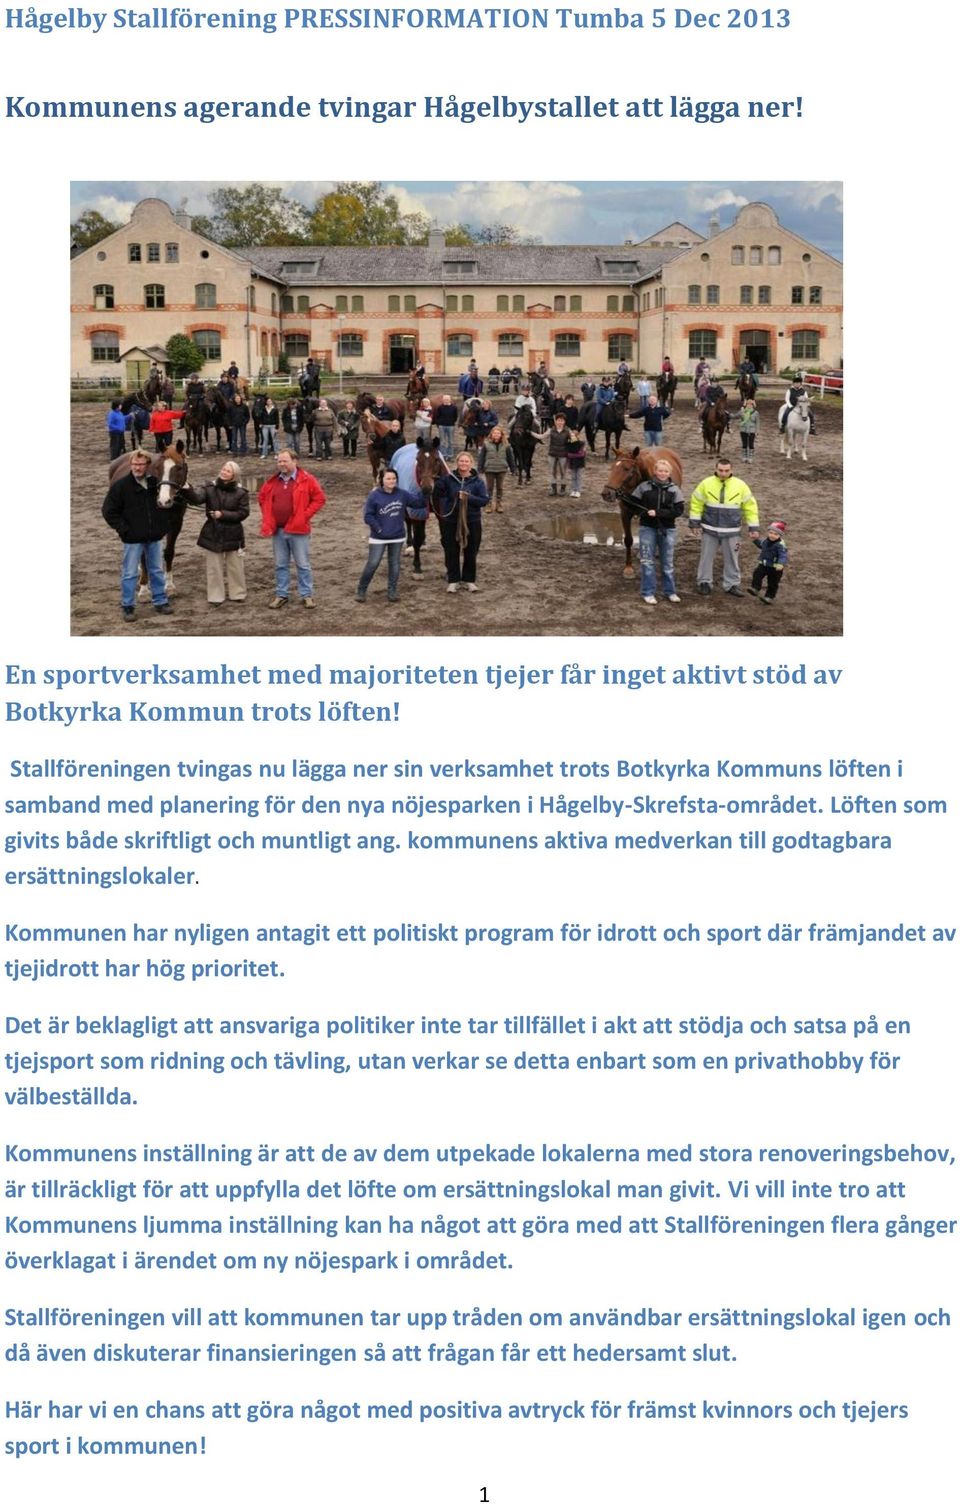 Stallföreningen tvingas nu lägga ner sin verksamhet trots Botkyrka Kommuns löften i samband med planering för den nya nöjesparken i Hågelby-Skrefsta-området.